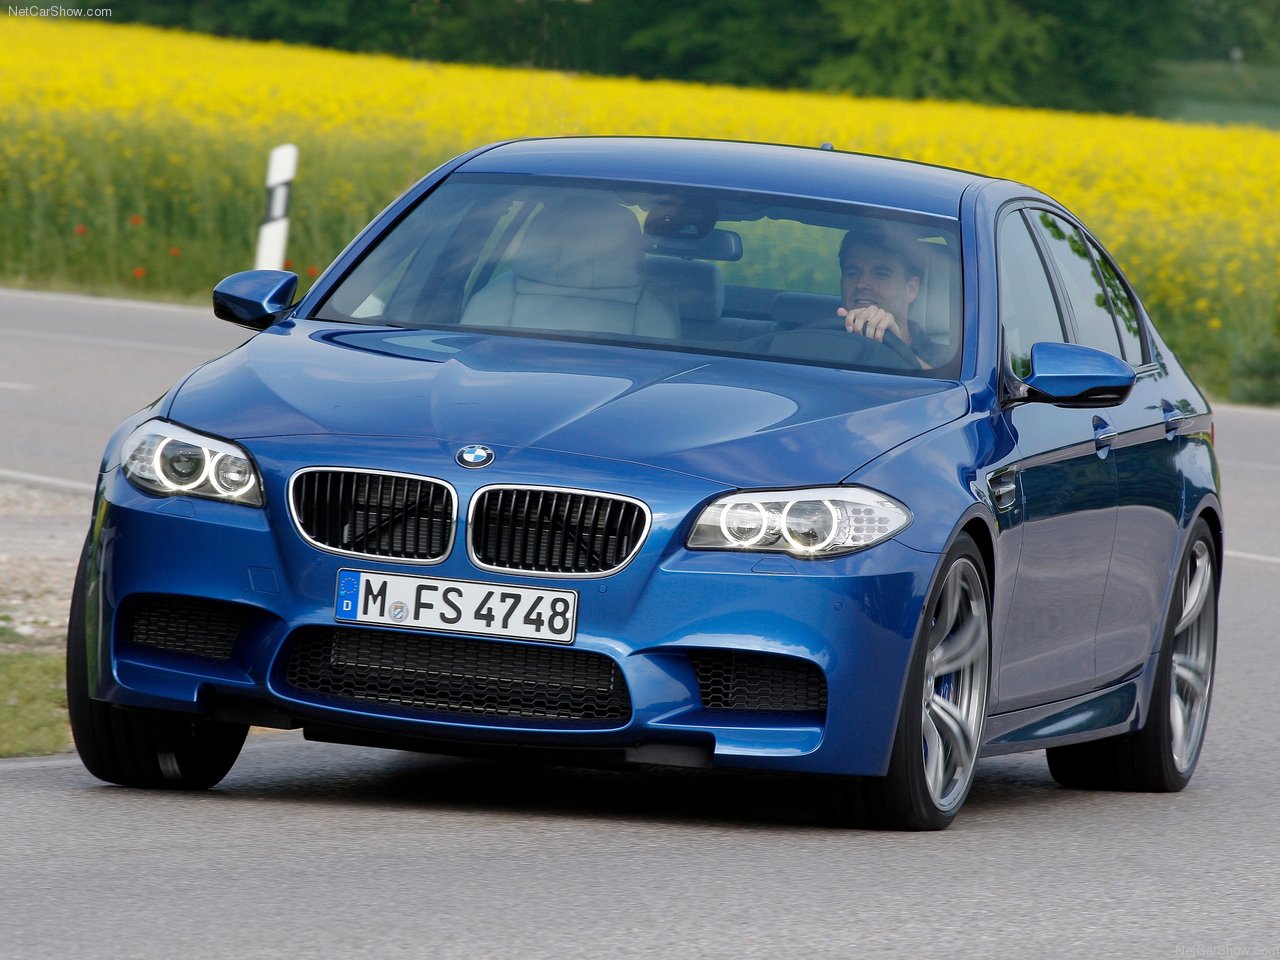 کمپانی BMW توسط کارل رپ (Karl Rapp) به عنوان یک کارخانه تولید موتور هواپیما تاسیس شد. شهر میلبرتزهوفن از استان مونیخ انتخاب شد، چون به کارخانه تولیدات ماشینهای هوائی گوستاو اوتو نزدیک بود. دایره آبی و سفید BMW که هنوز به عنوان آرم آن شناخته می شود، به پرچم شطرنجی آبی و سفید باواریا اشاره دارد و همچنین خواستگاه BMW را با نشانه ملخ هواپیمای سفید در حال چرخش روی زمینه آسمان آبی نشان می دهد. در سال 1916 کارخانه برای ساخت موتورهای V12 (12 سیلندر خورجینی) با مجارستان و اتریش قرارداد<